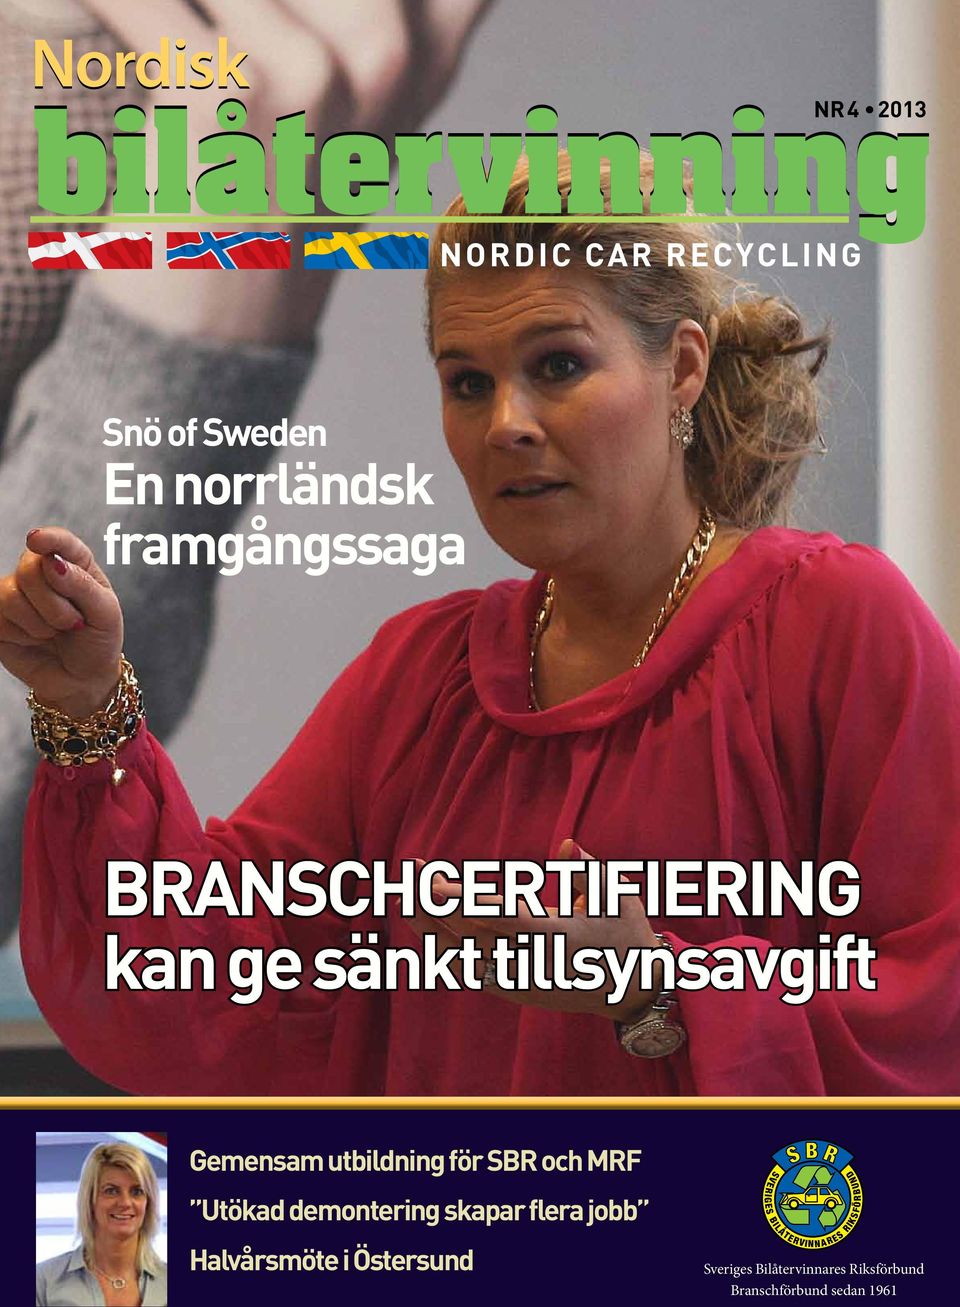 Östersund Sveriges Bilåtervinnares Riksförbund Branschförbund sedan 1961 nordisk bilåtervinning 1 2012 nbå 1